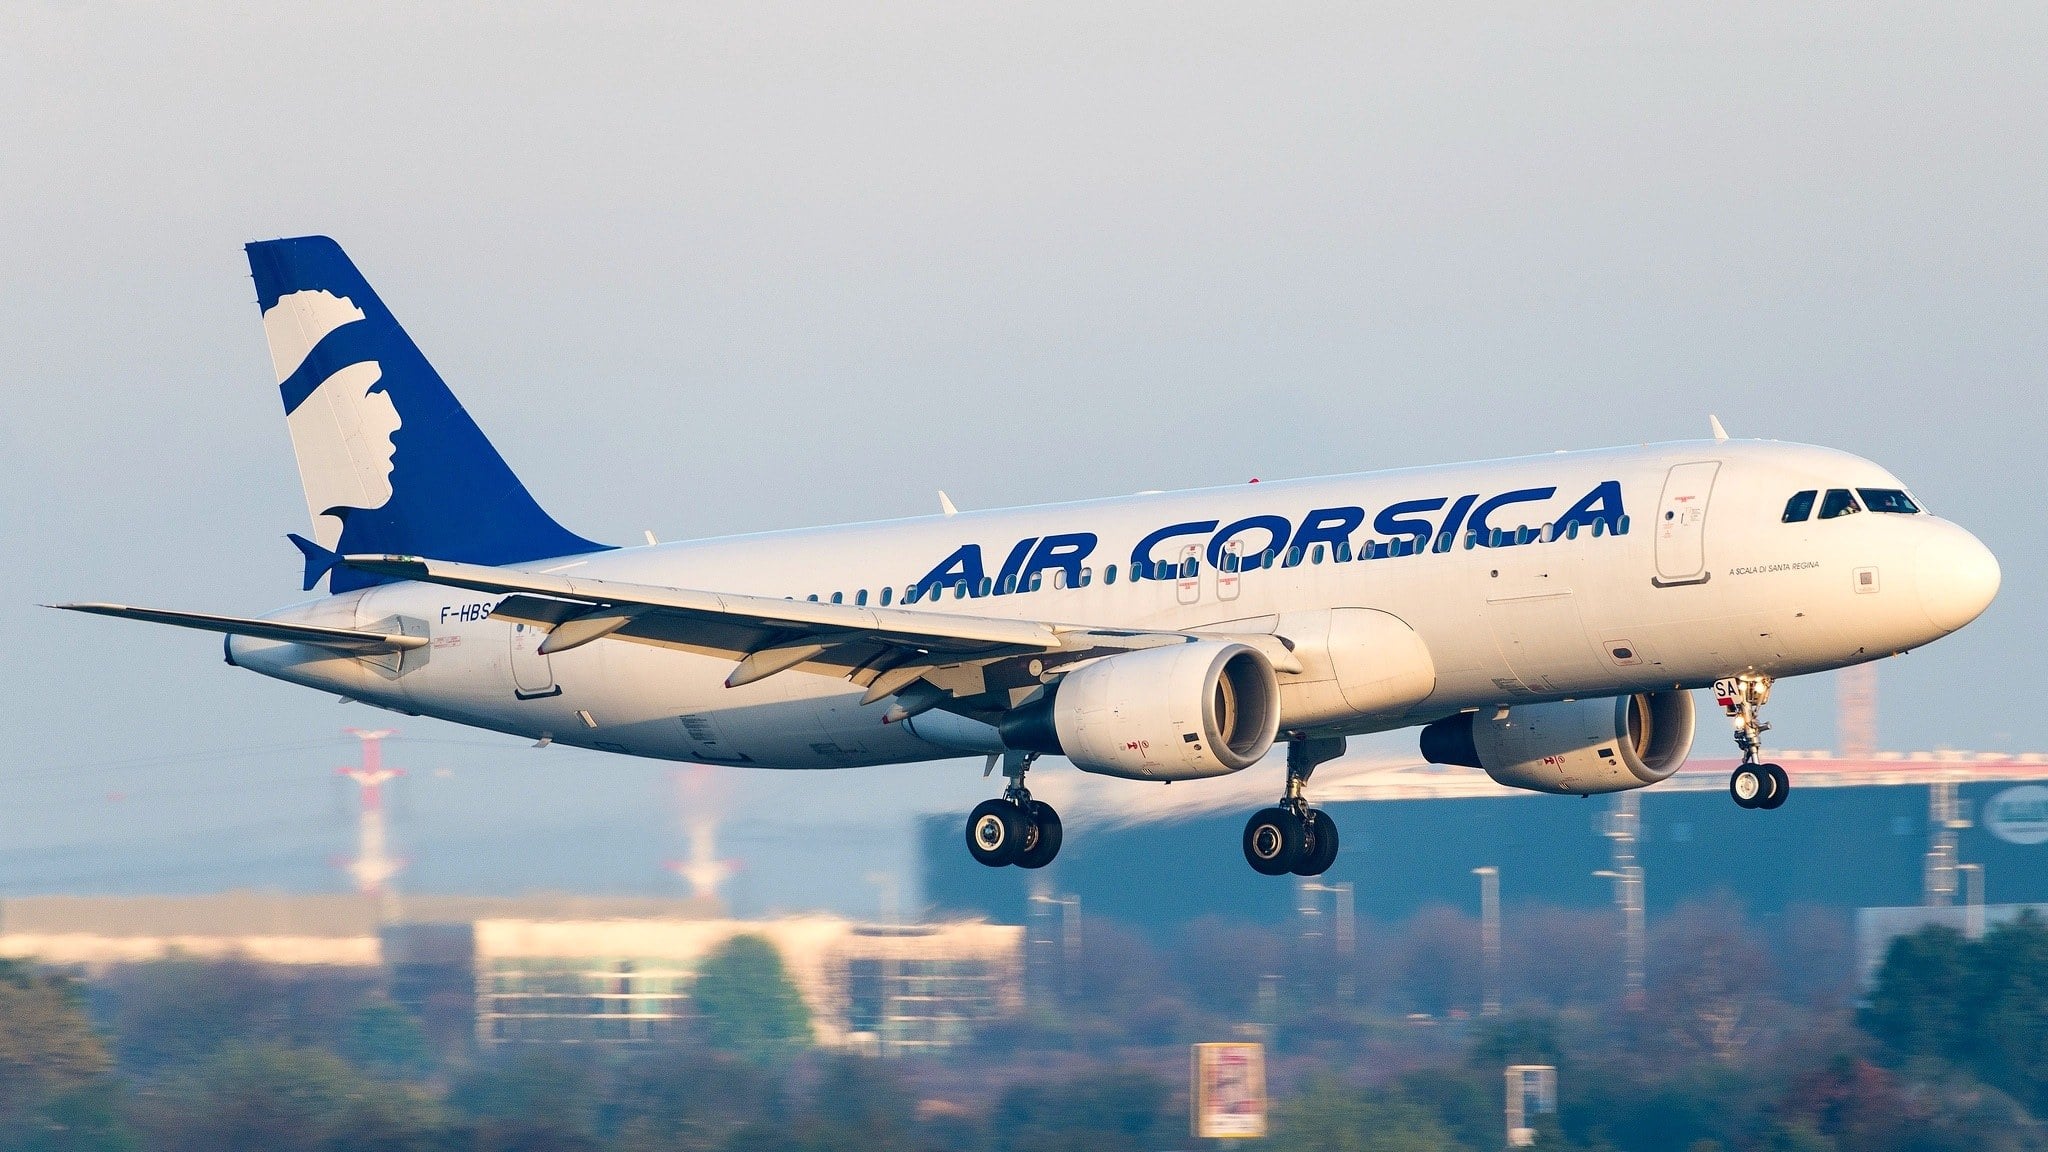 A320 Air Corsica